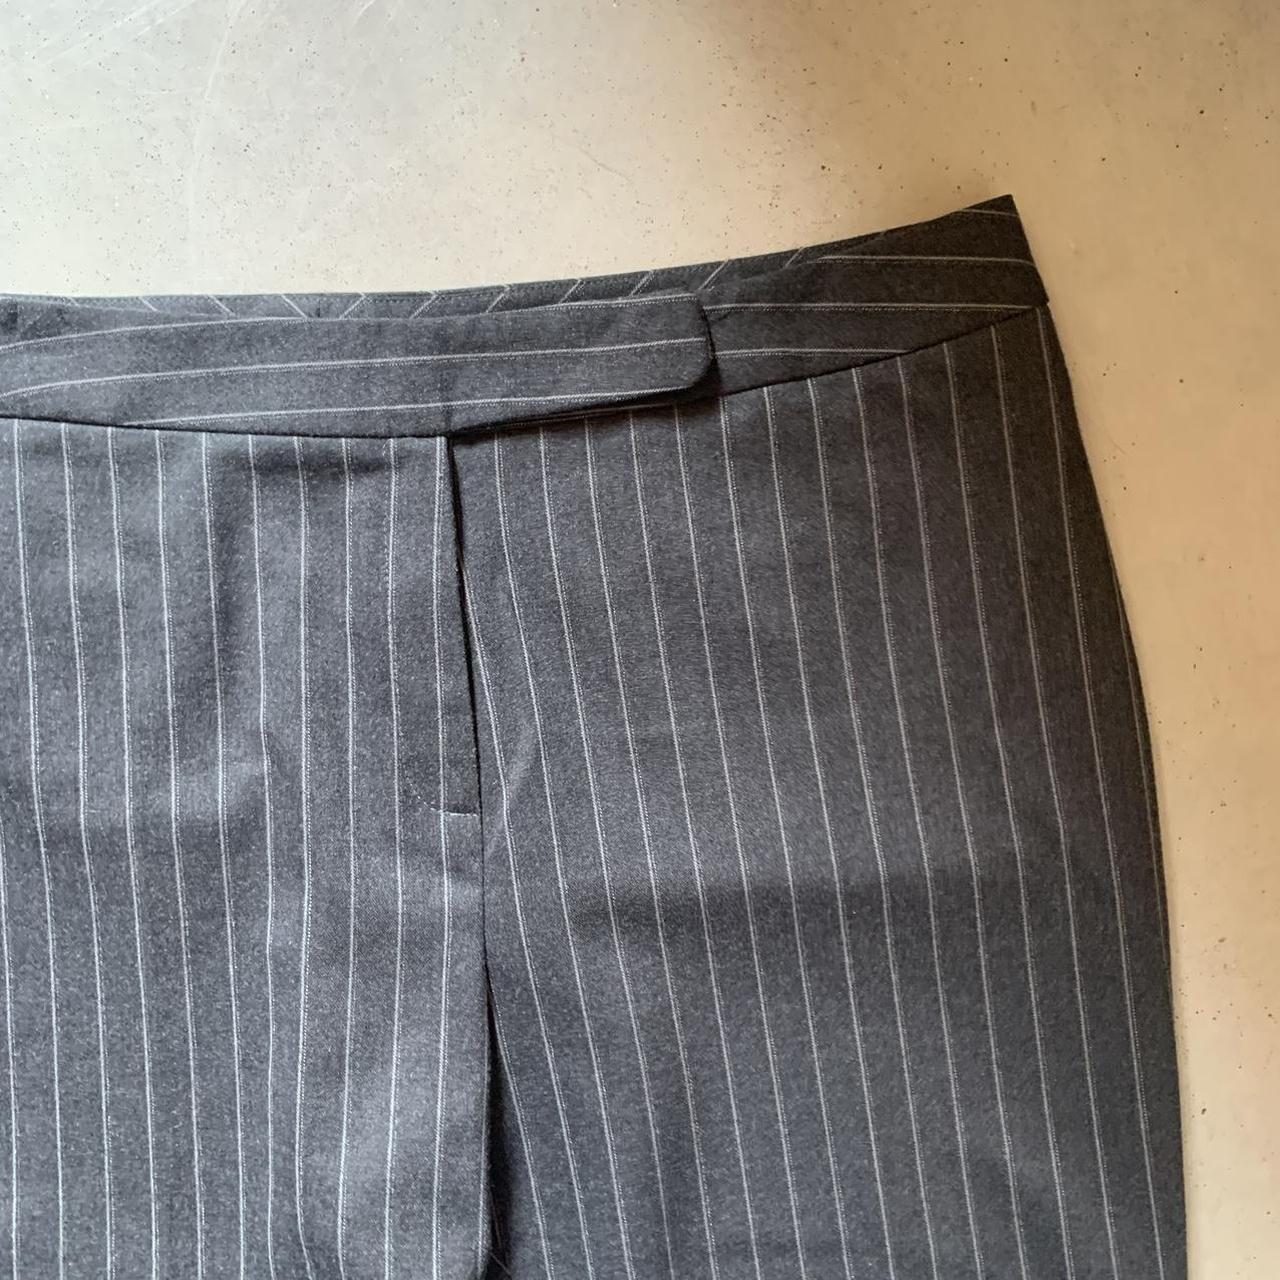 Women 00s 90s Y2k grey pinstripe trousers suit smart... - Depop